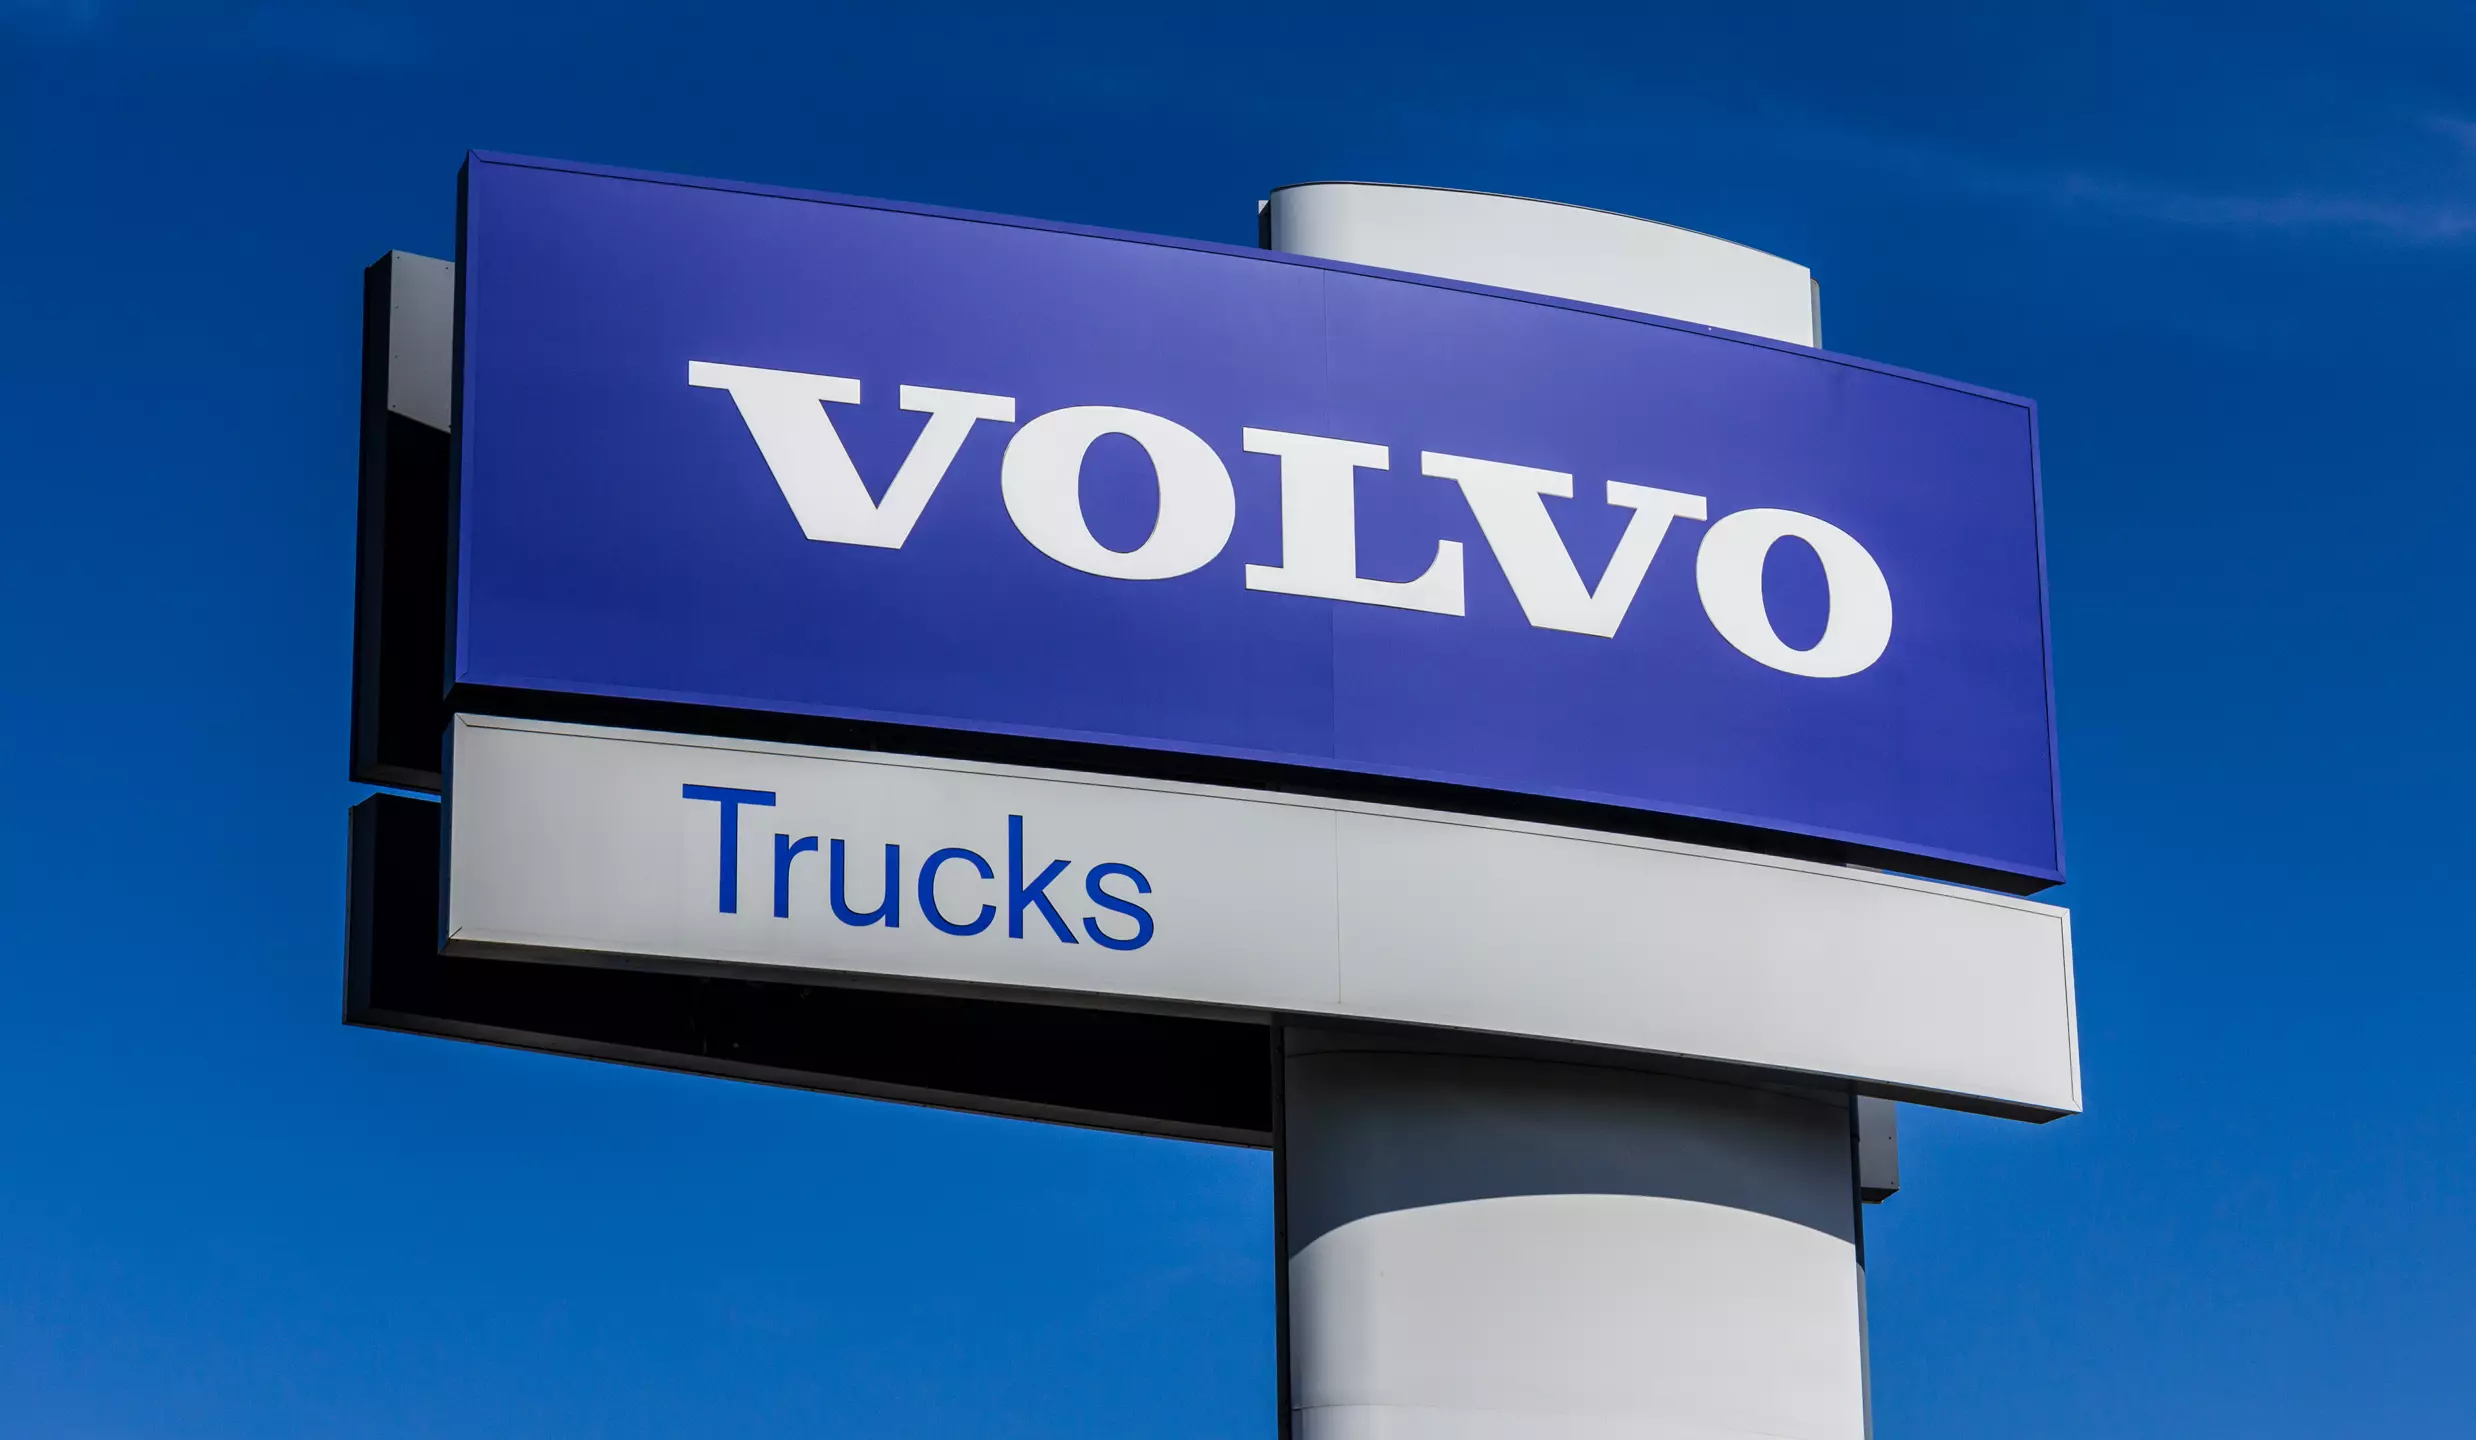 Nuova gamma Volvo FH Aero: l’innovazione al servizio dell’efficienza energetica